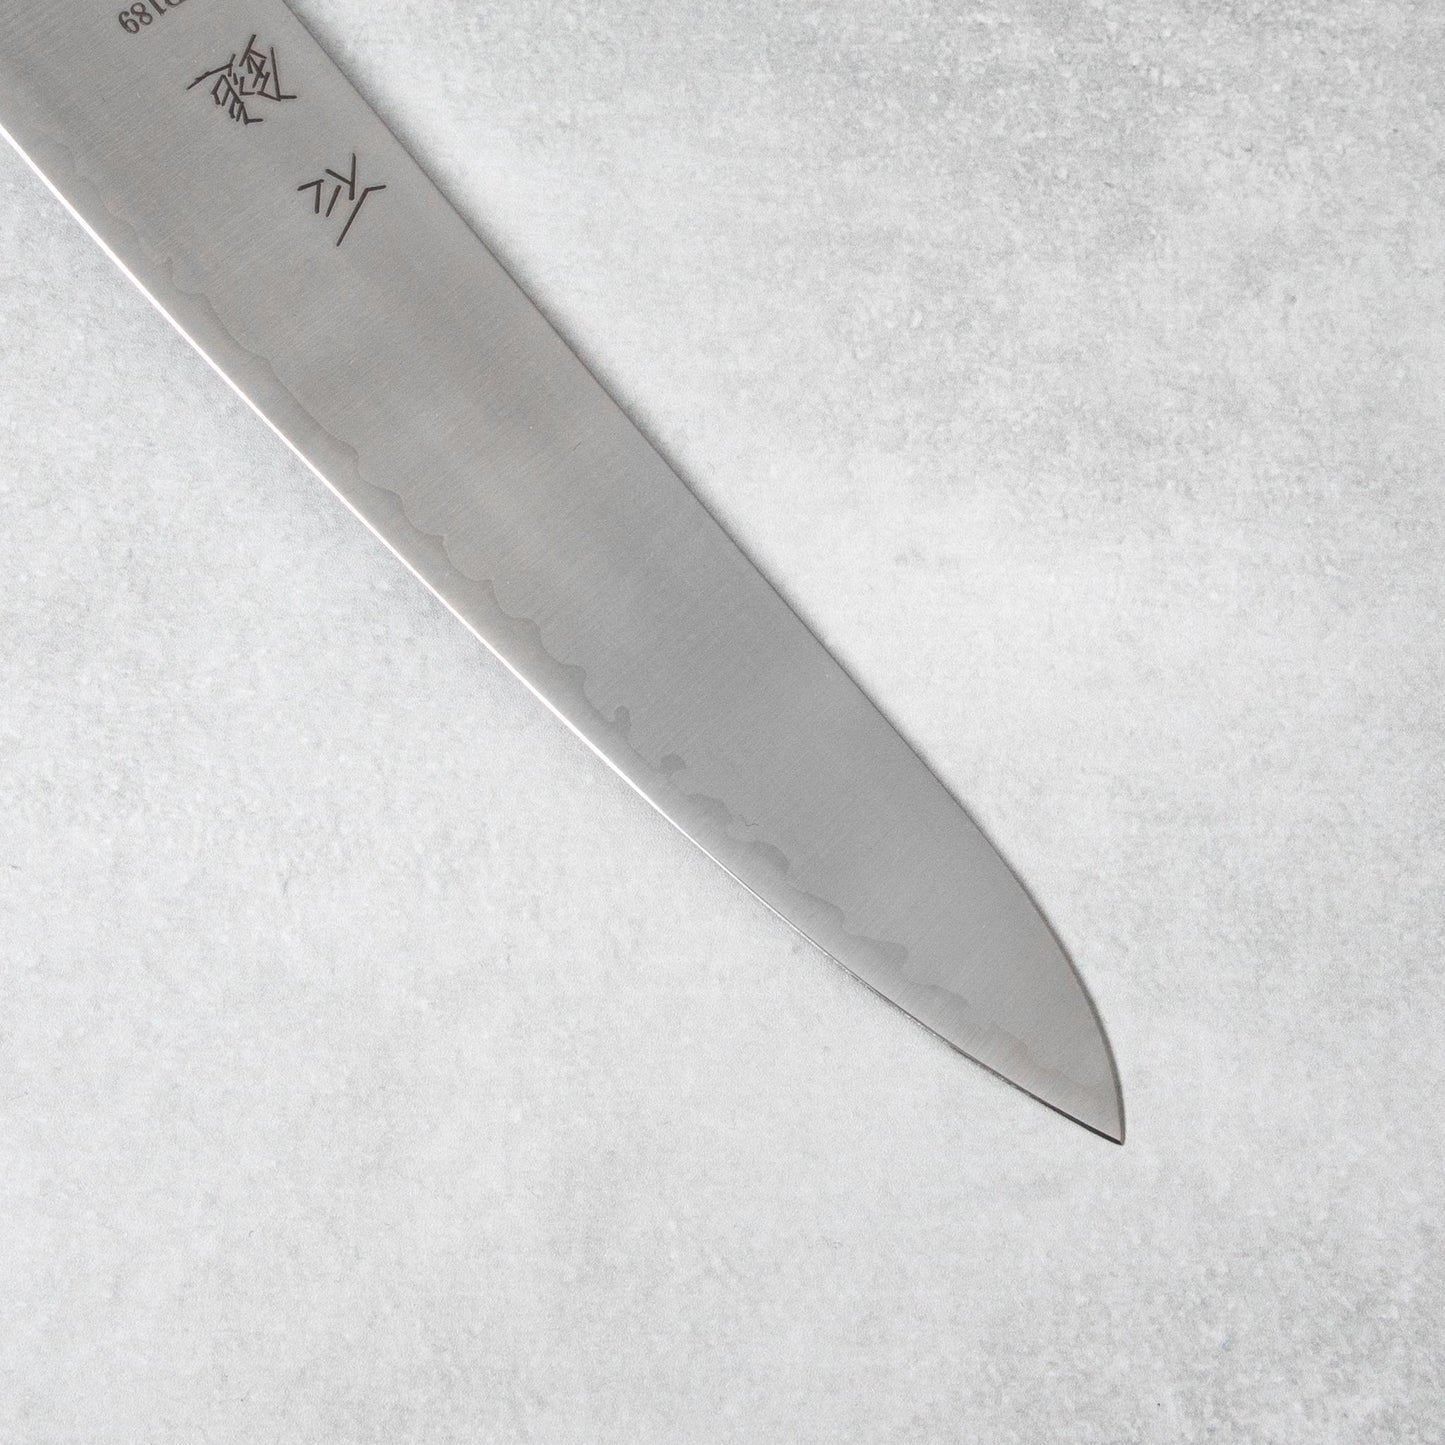 Ishizuchi ZDP189 Petty Knife